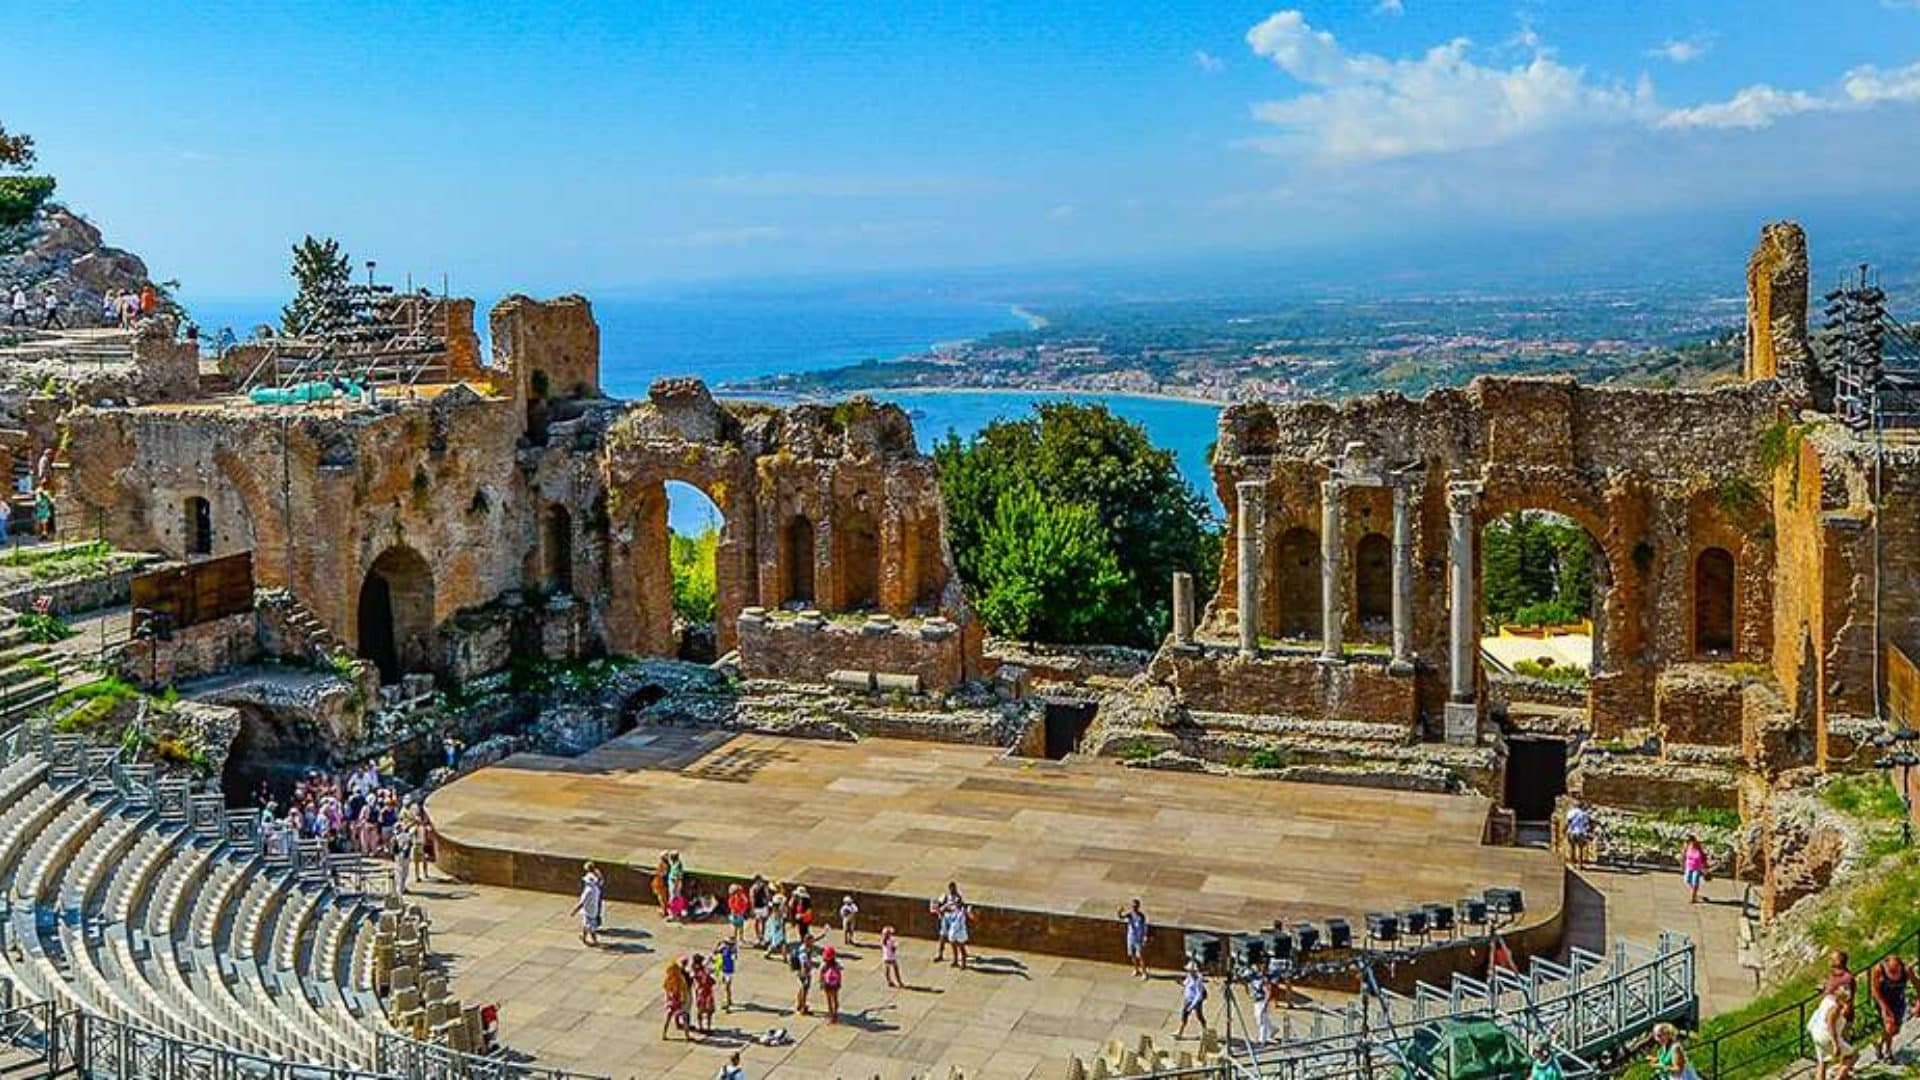 Boom di turisti in Sicilia, dati vicini al periodo pre-pandemia: il riscatto che parte dalla regione